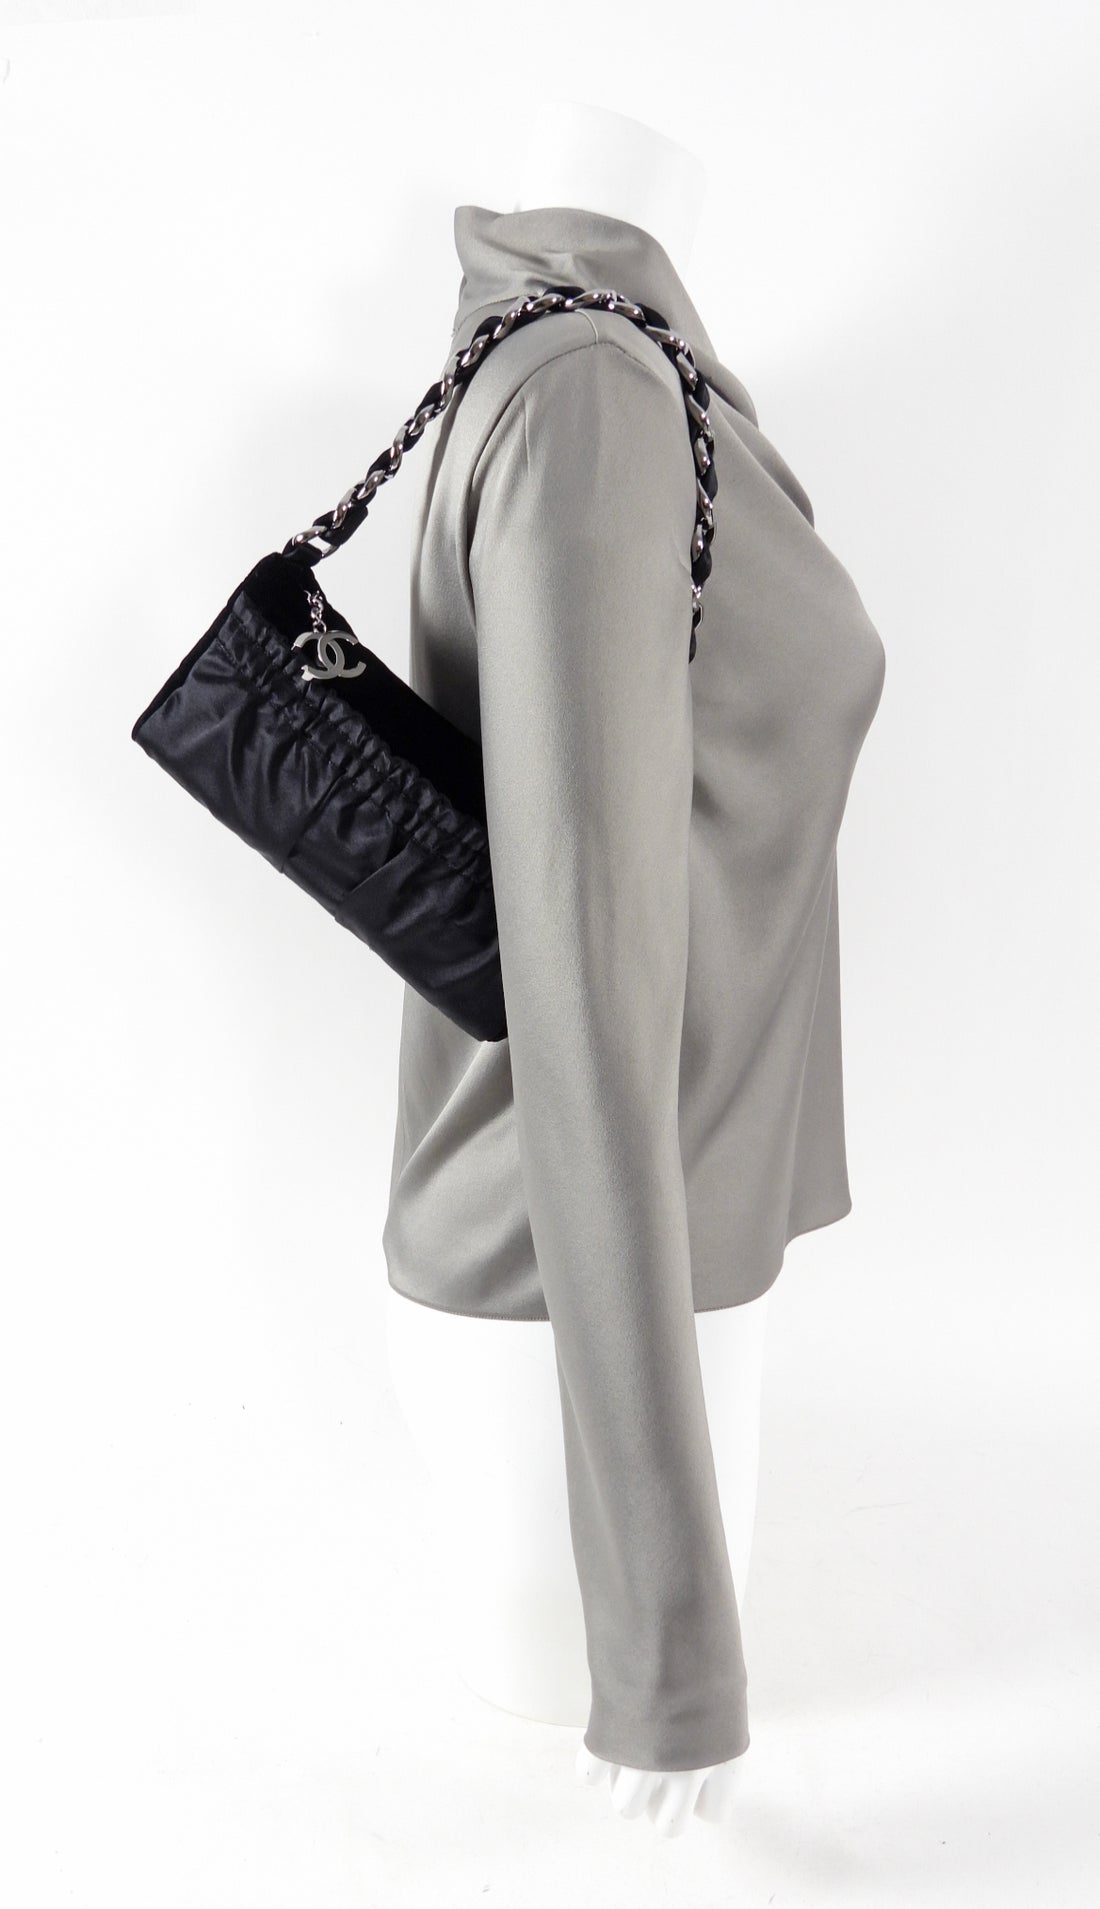 Chanel Vintage 2004 Black Velvet and Satin Pochette Chain Bag